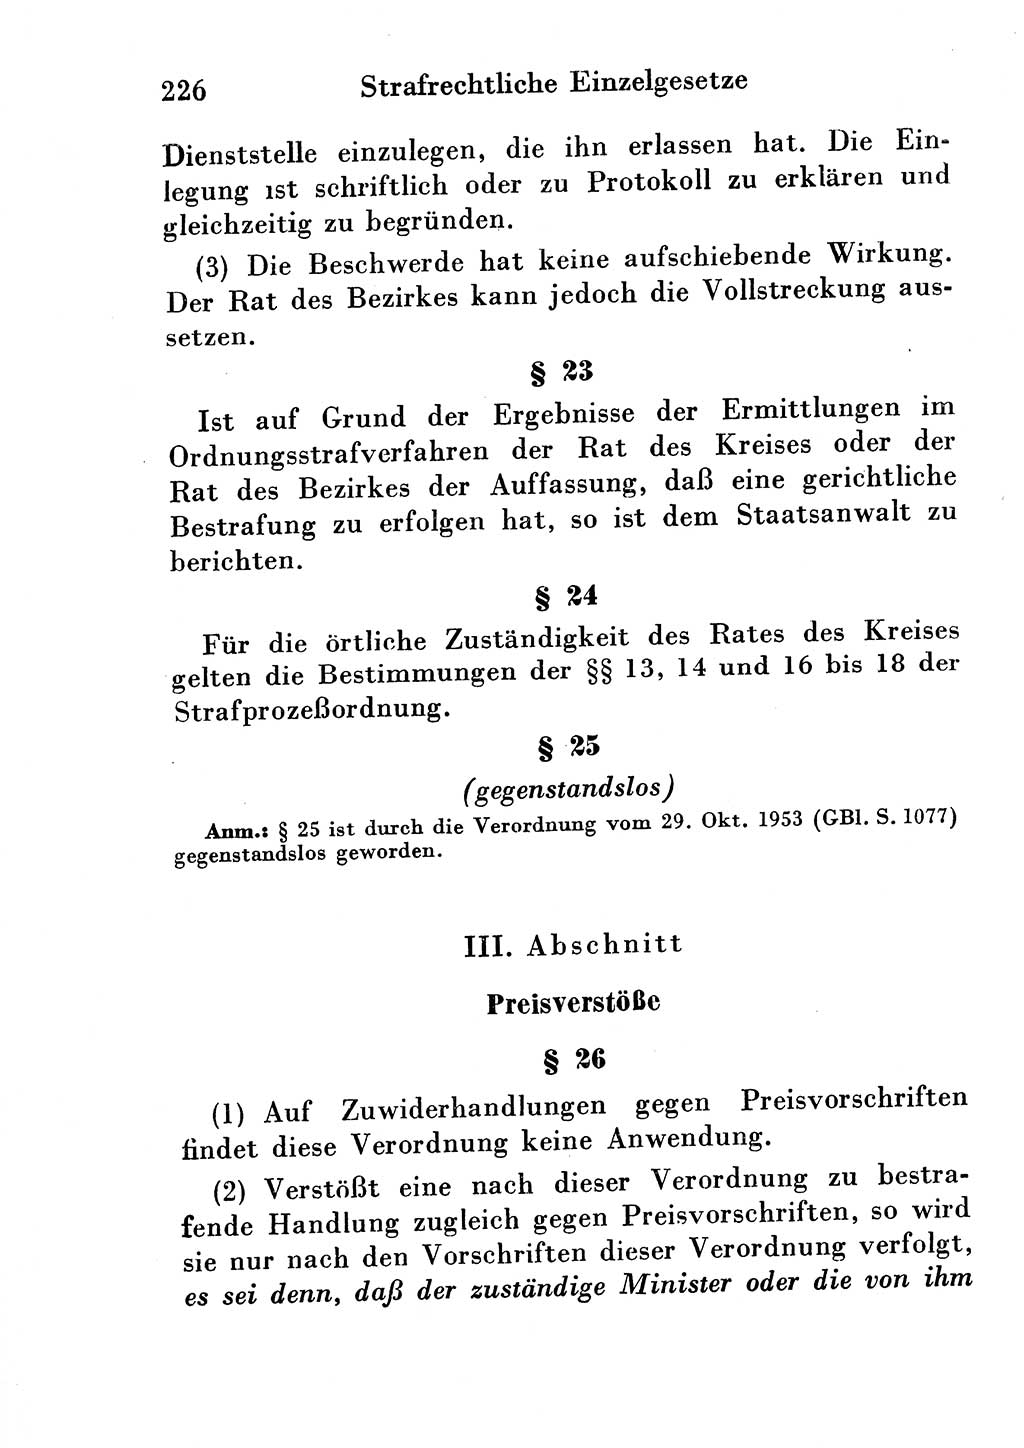 Strafgesetzbuch (StGB) und andere Strafgesetze [Deutsche Demokratische Republik (DDR)] 1954, Seite 226 (StGB Strafges. DDR 1954, S. 226)